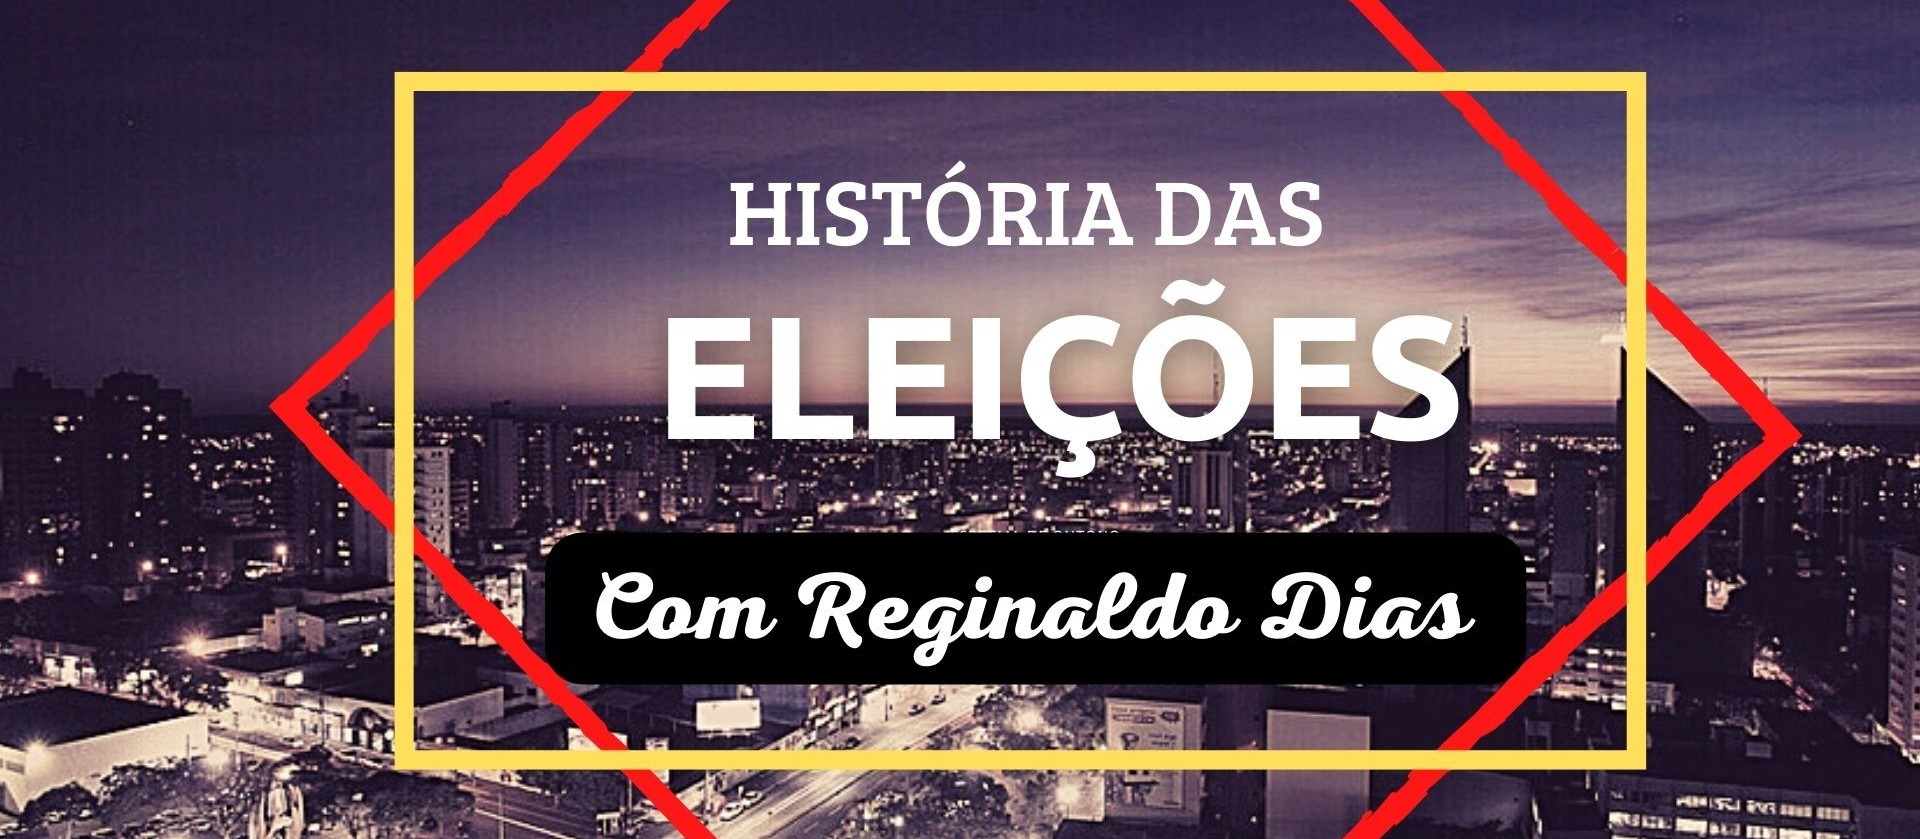 Eleições de 1955: "O Brasil não é para principiantes"